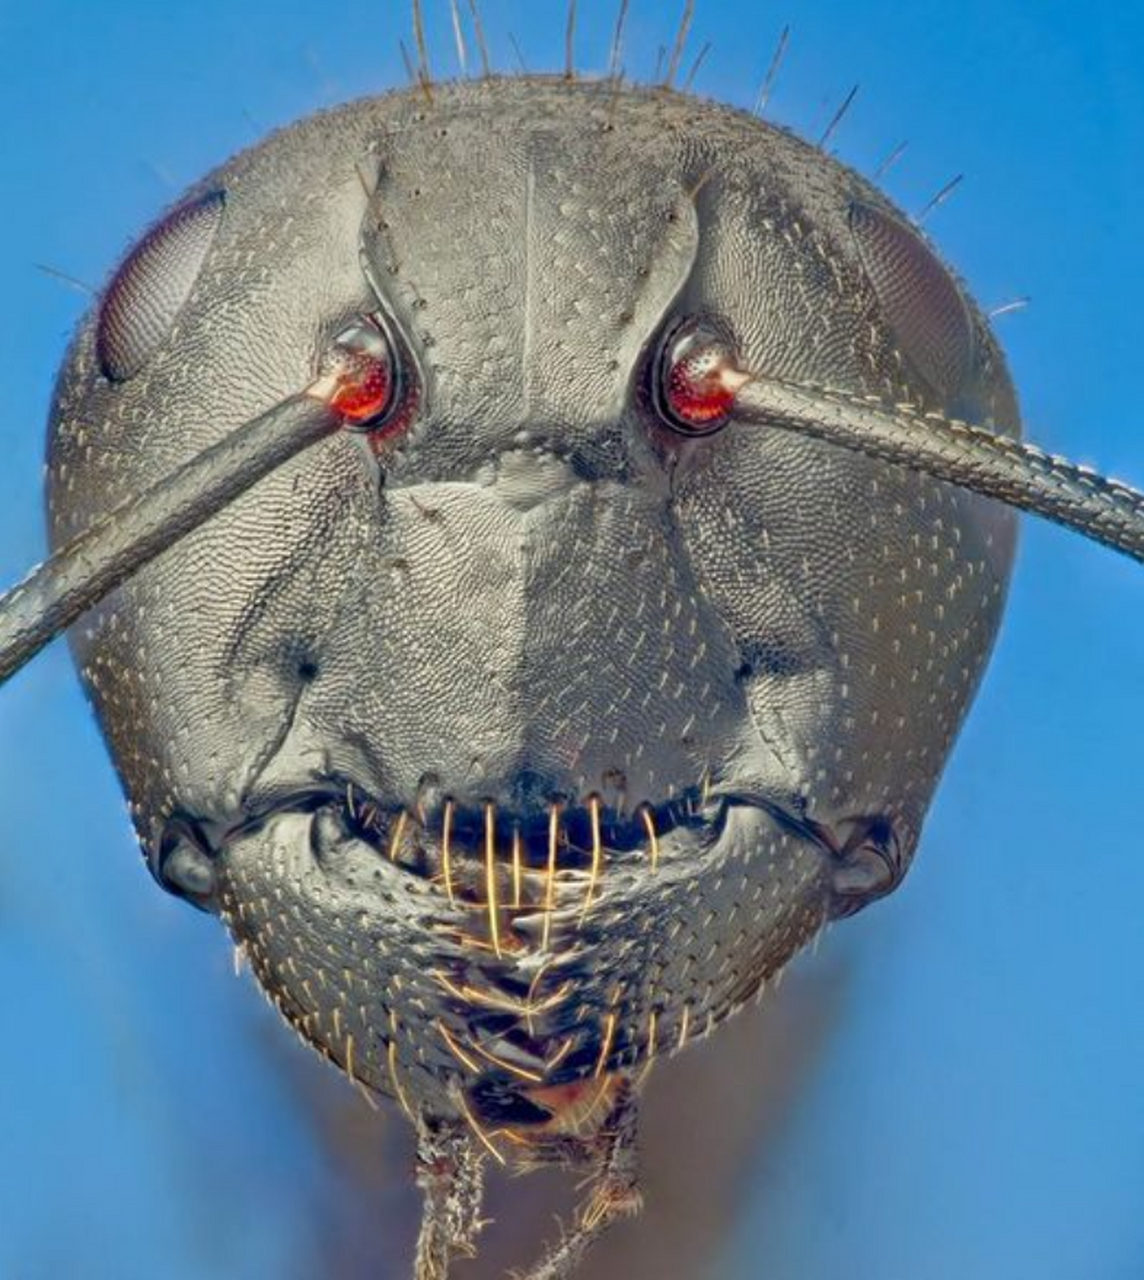 这是蚂蚁的高倍放大的脸,近距离拍摄